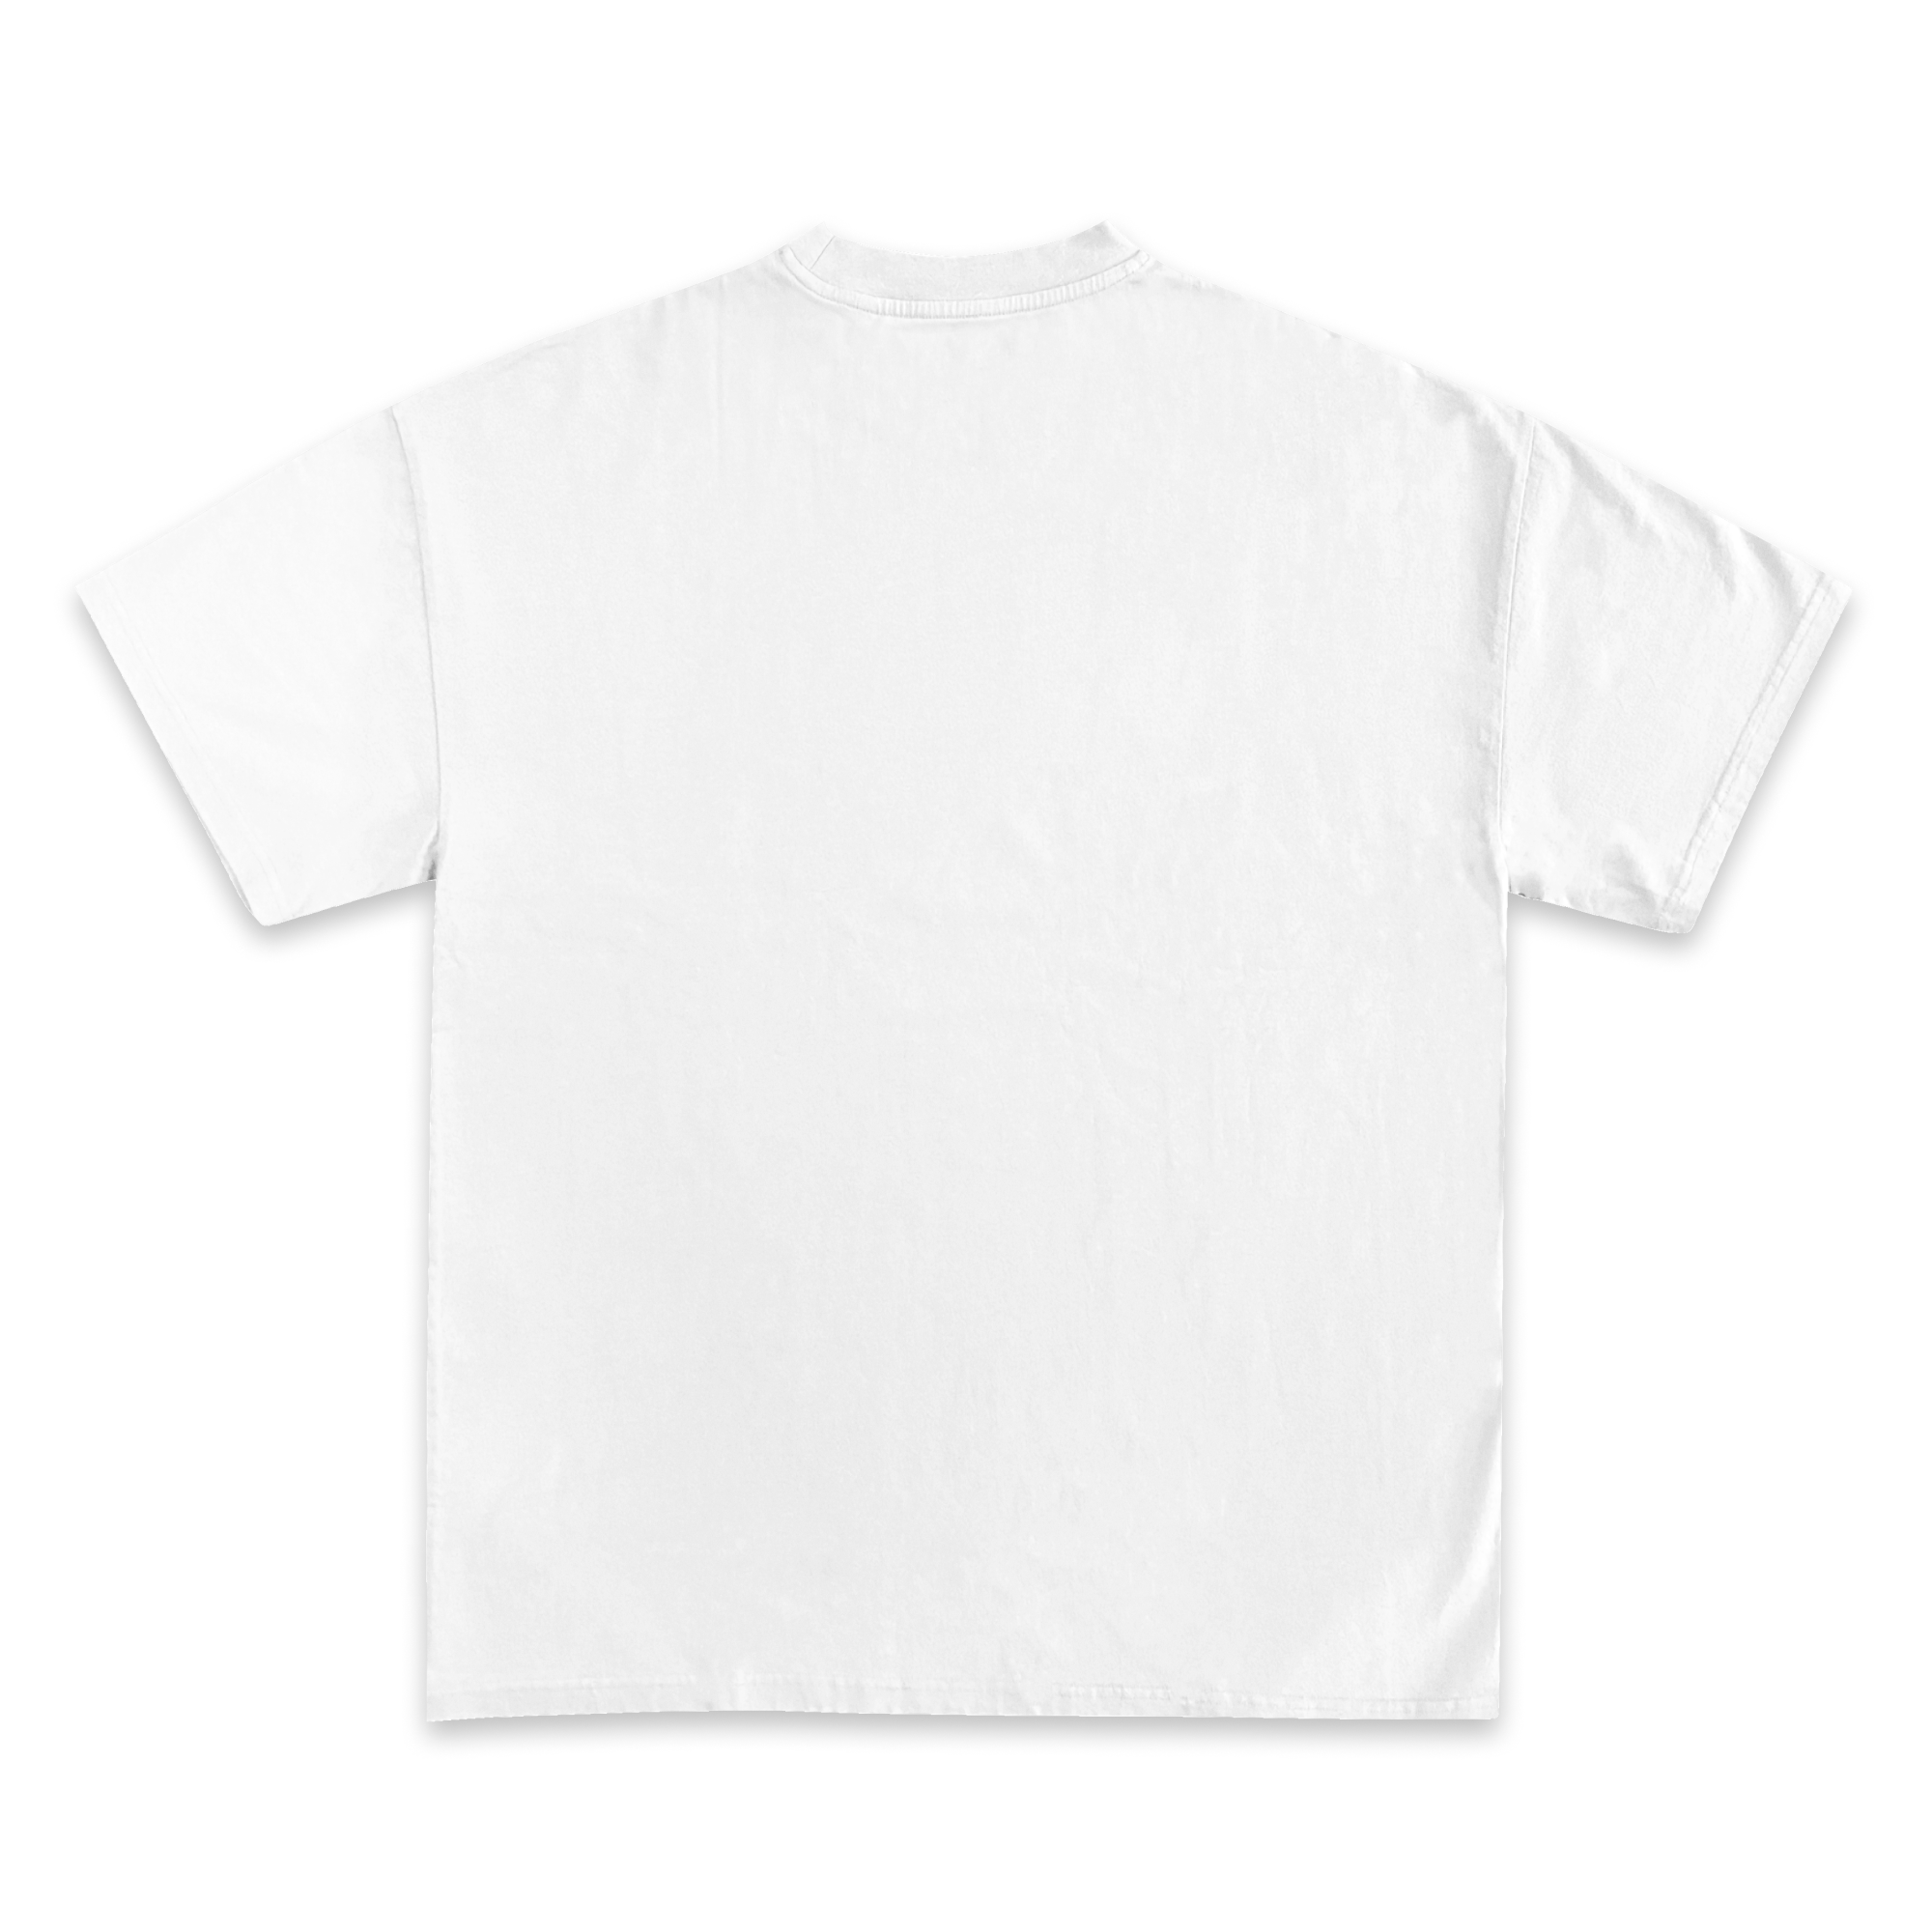 Dennis Rodman Jumbo Graphic T-Shirt